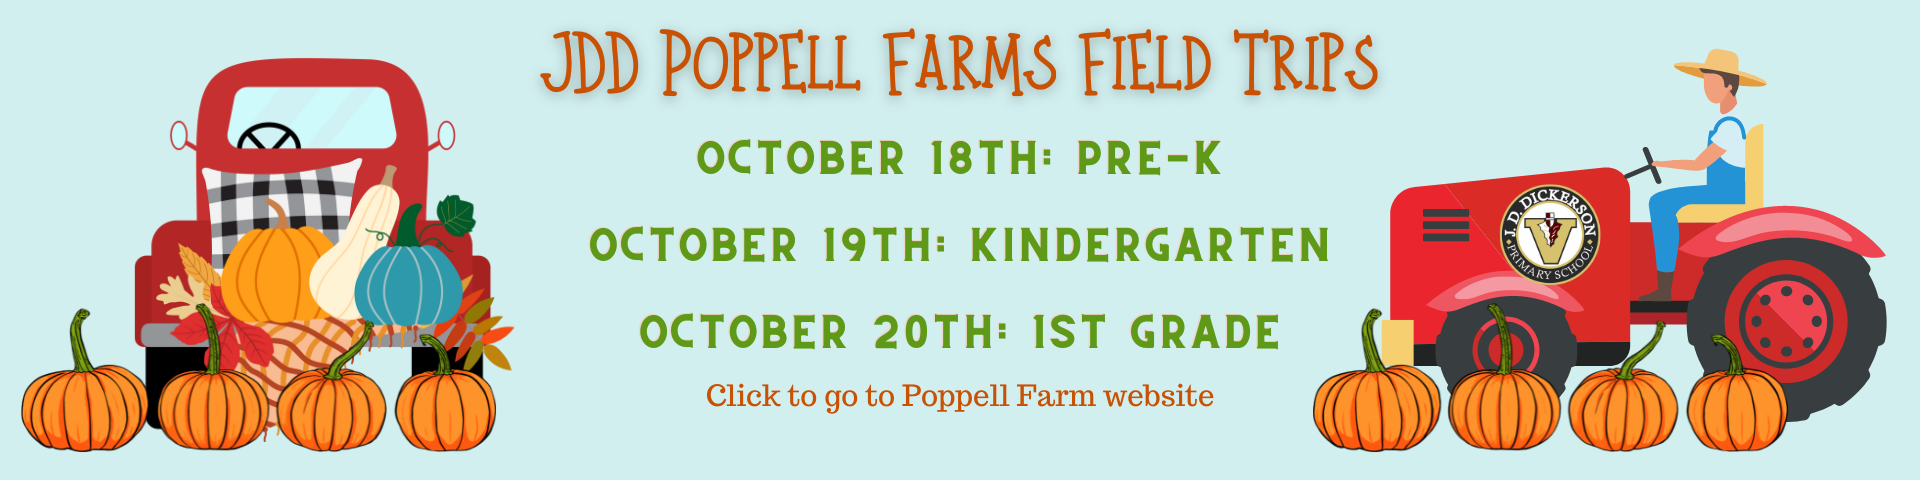 Poppell Farm Field Trips